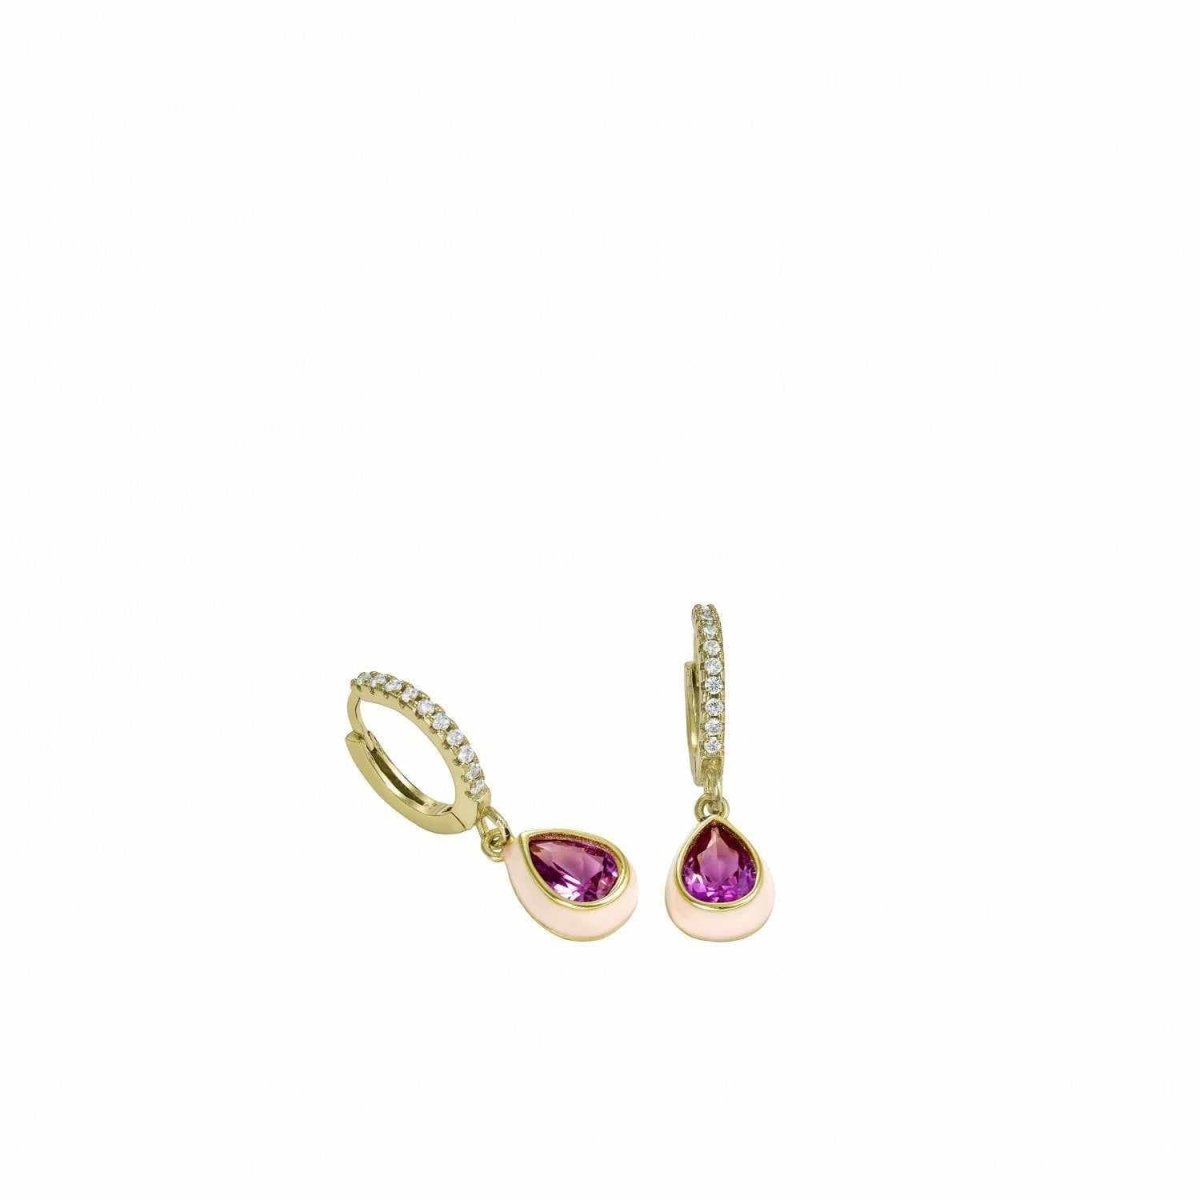 Earrings - Drop earrings with pendants with pink enamel design